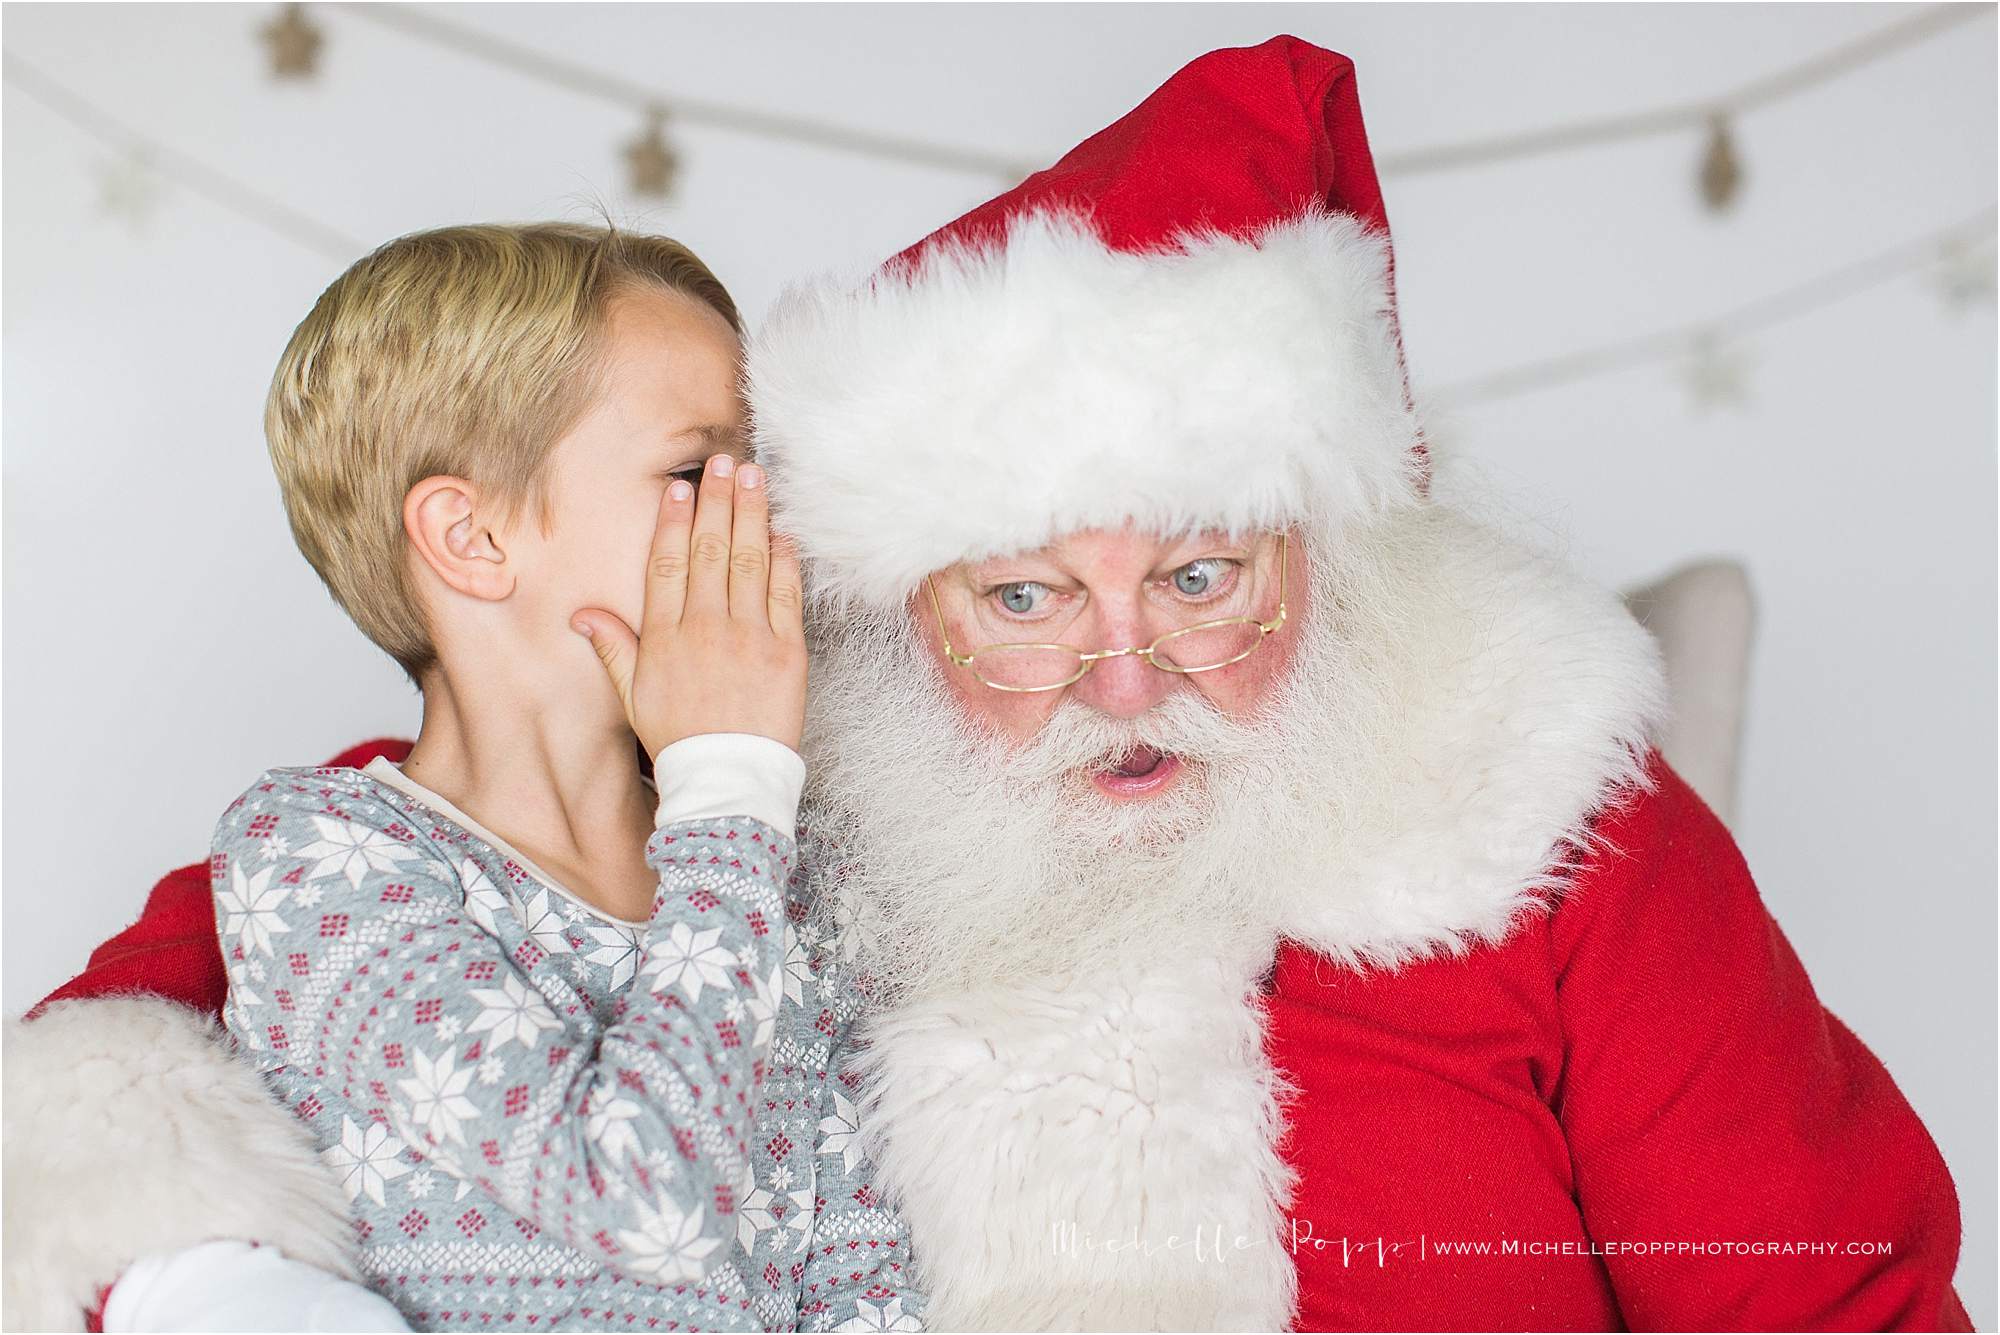 Whispering into Santa's ear